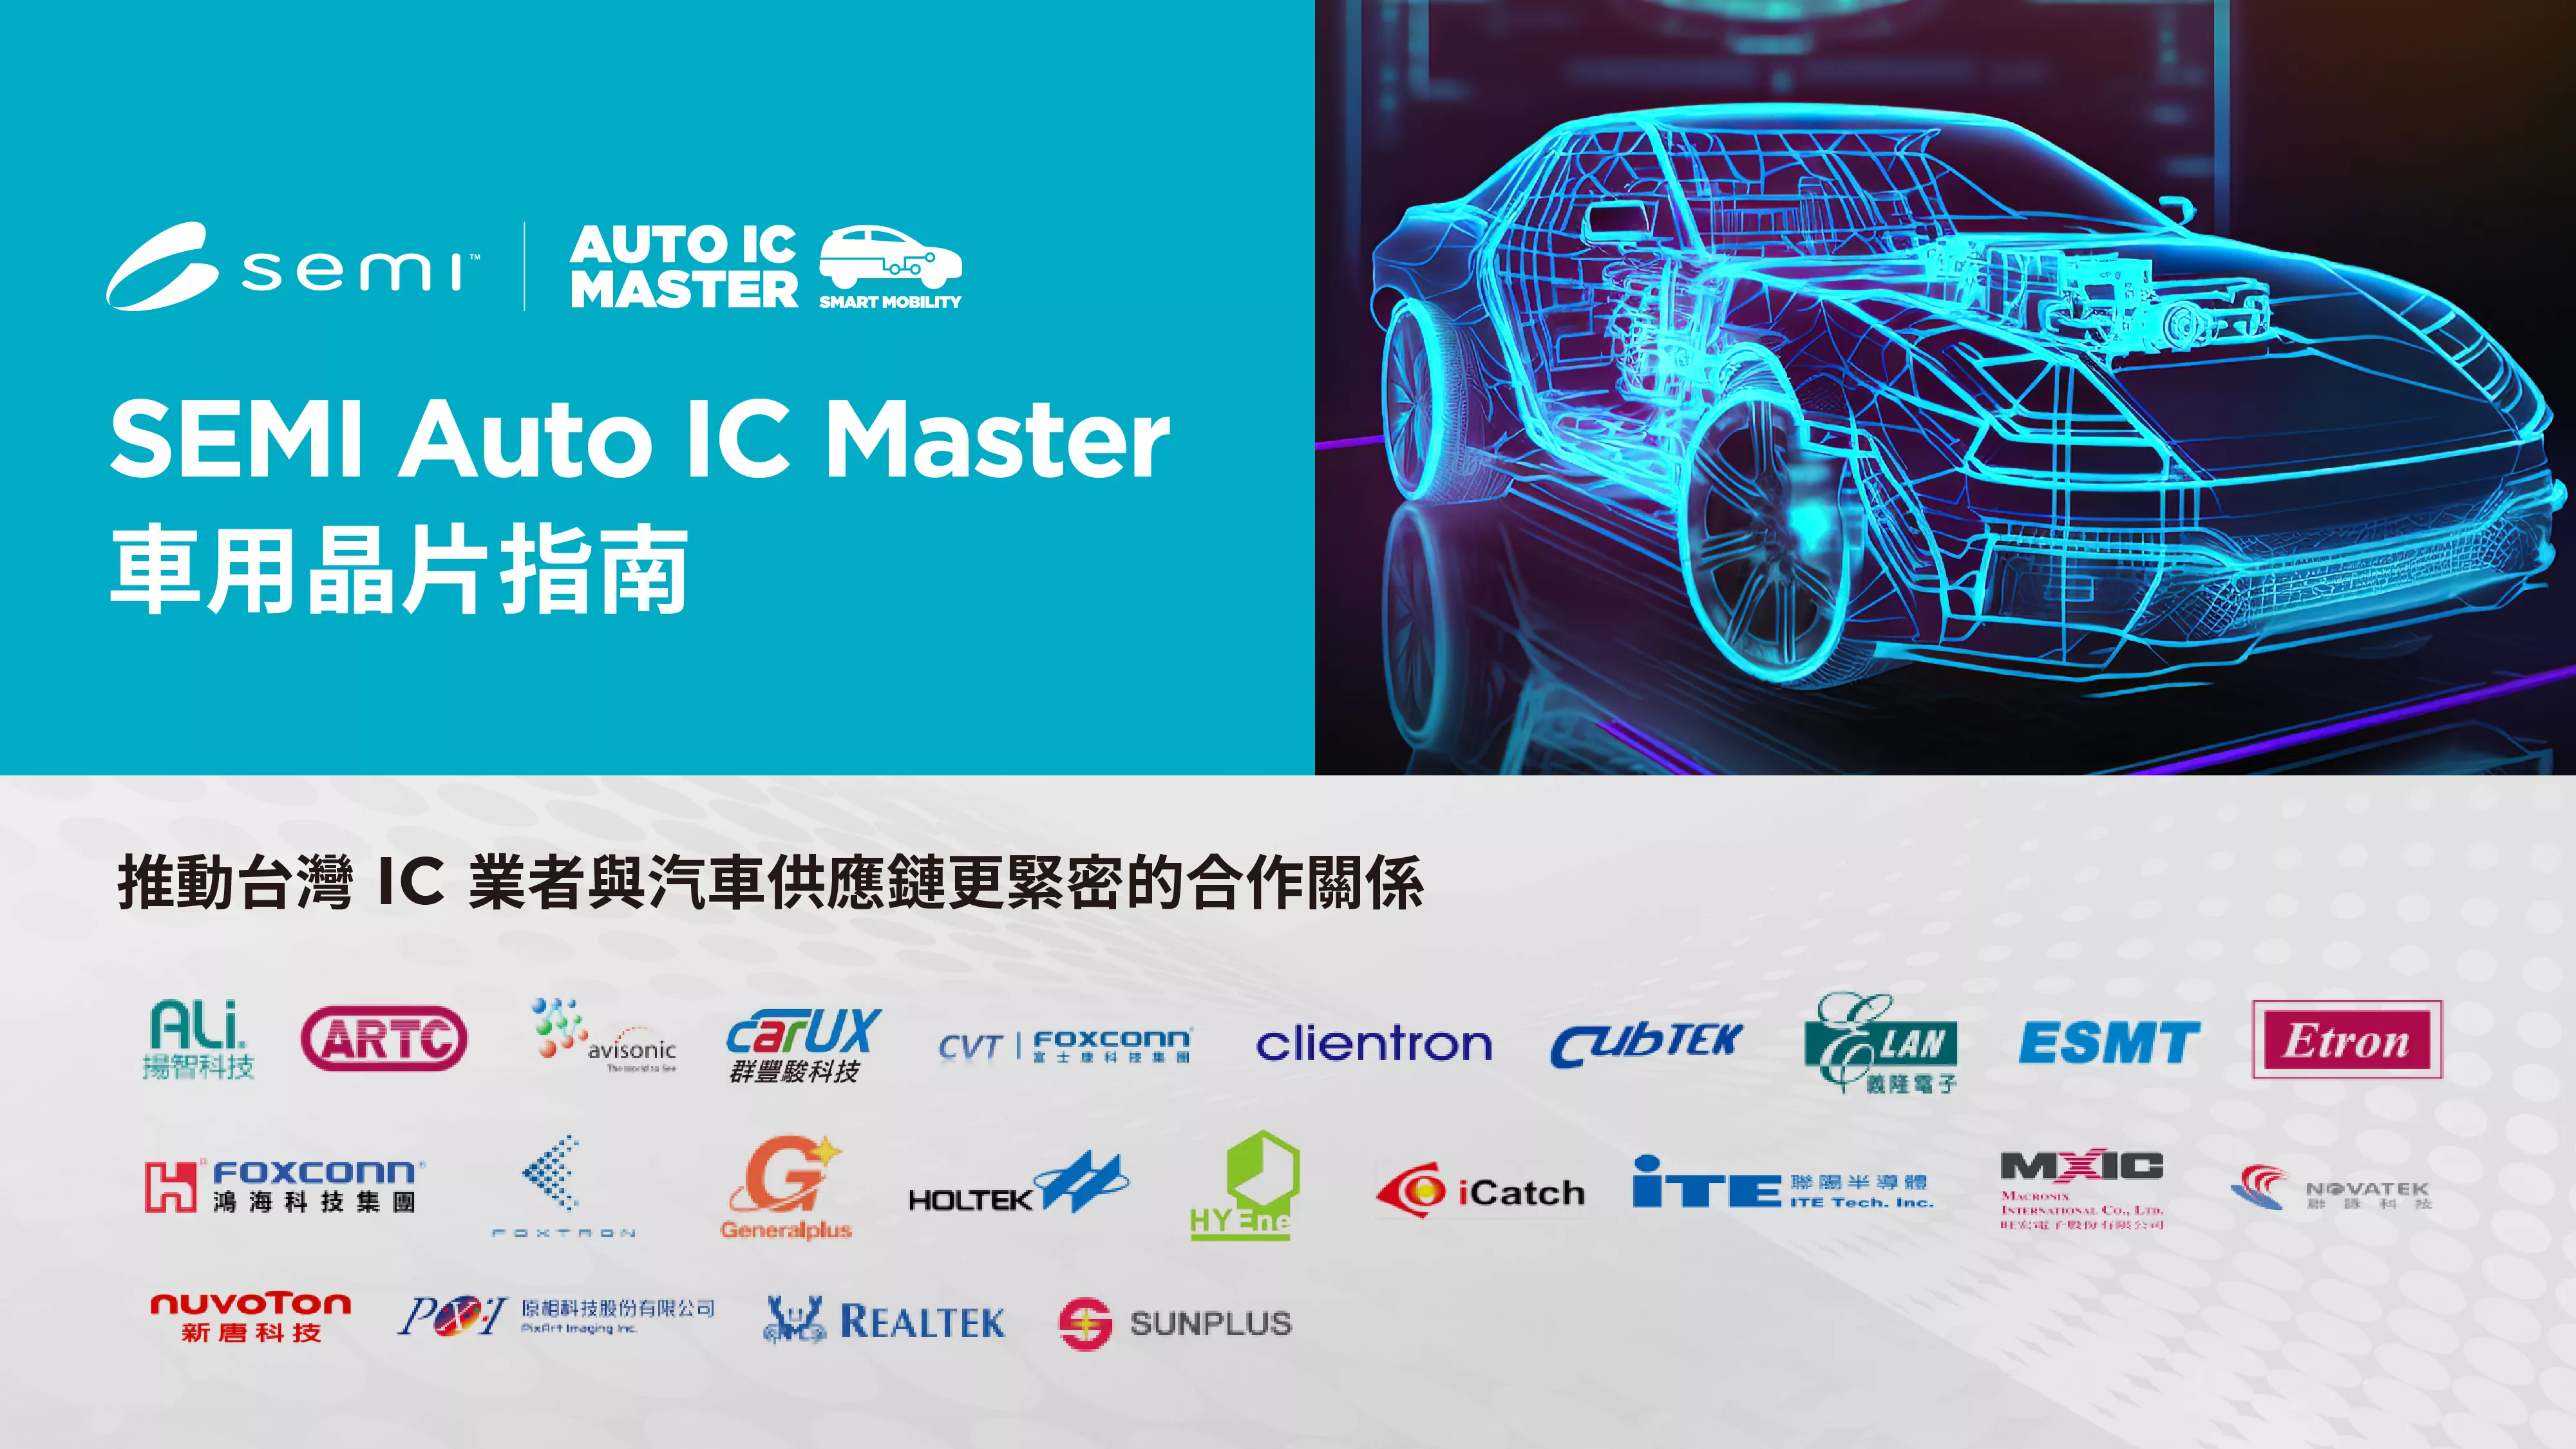 SEMI Auto IC Master